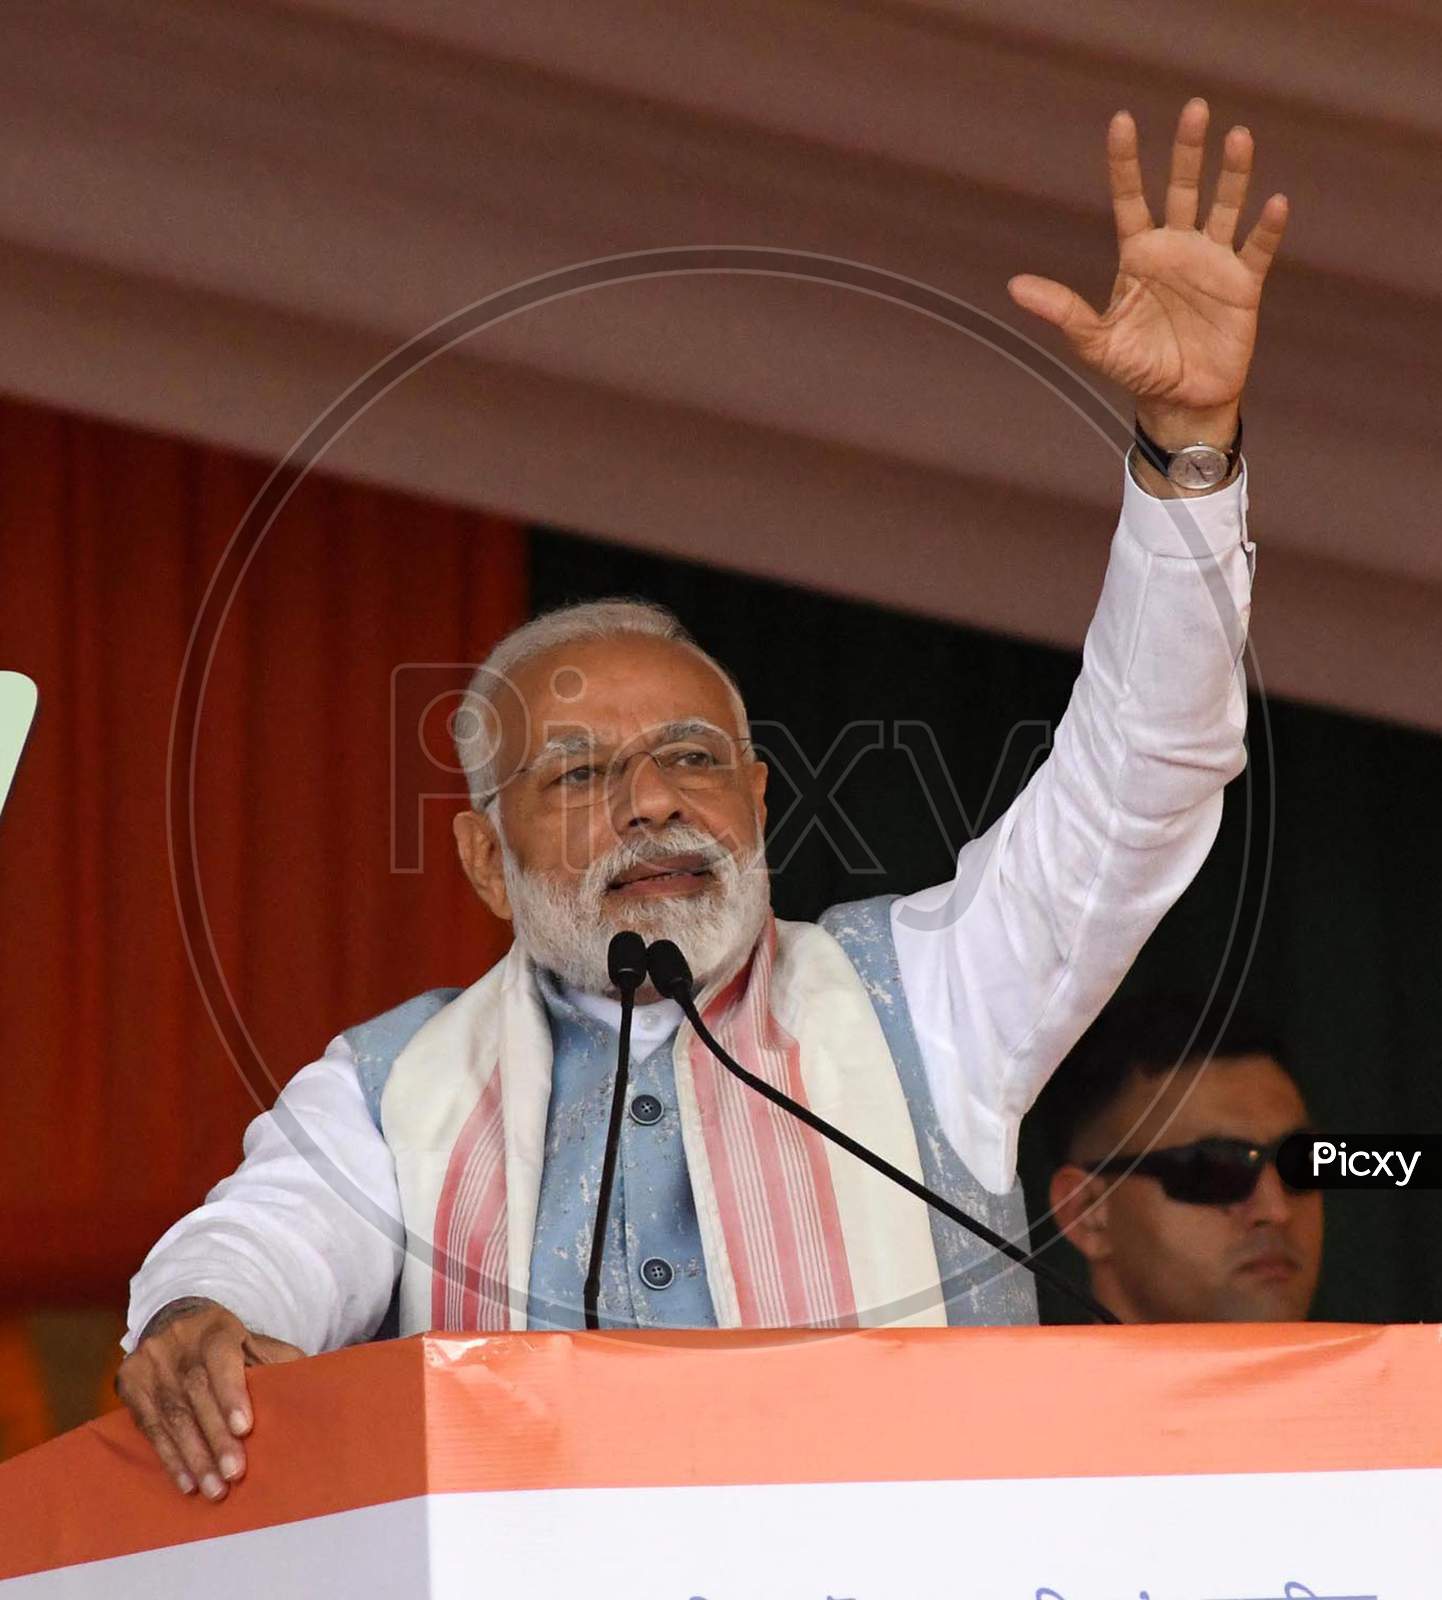 Prime Minister Narendra Modi delivering speech